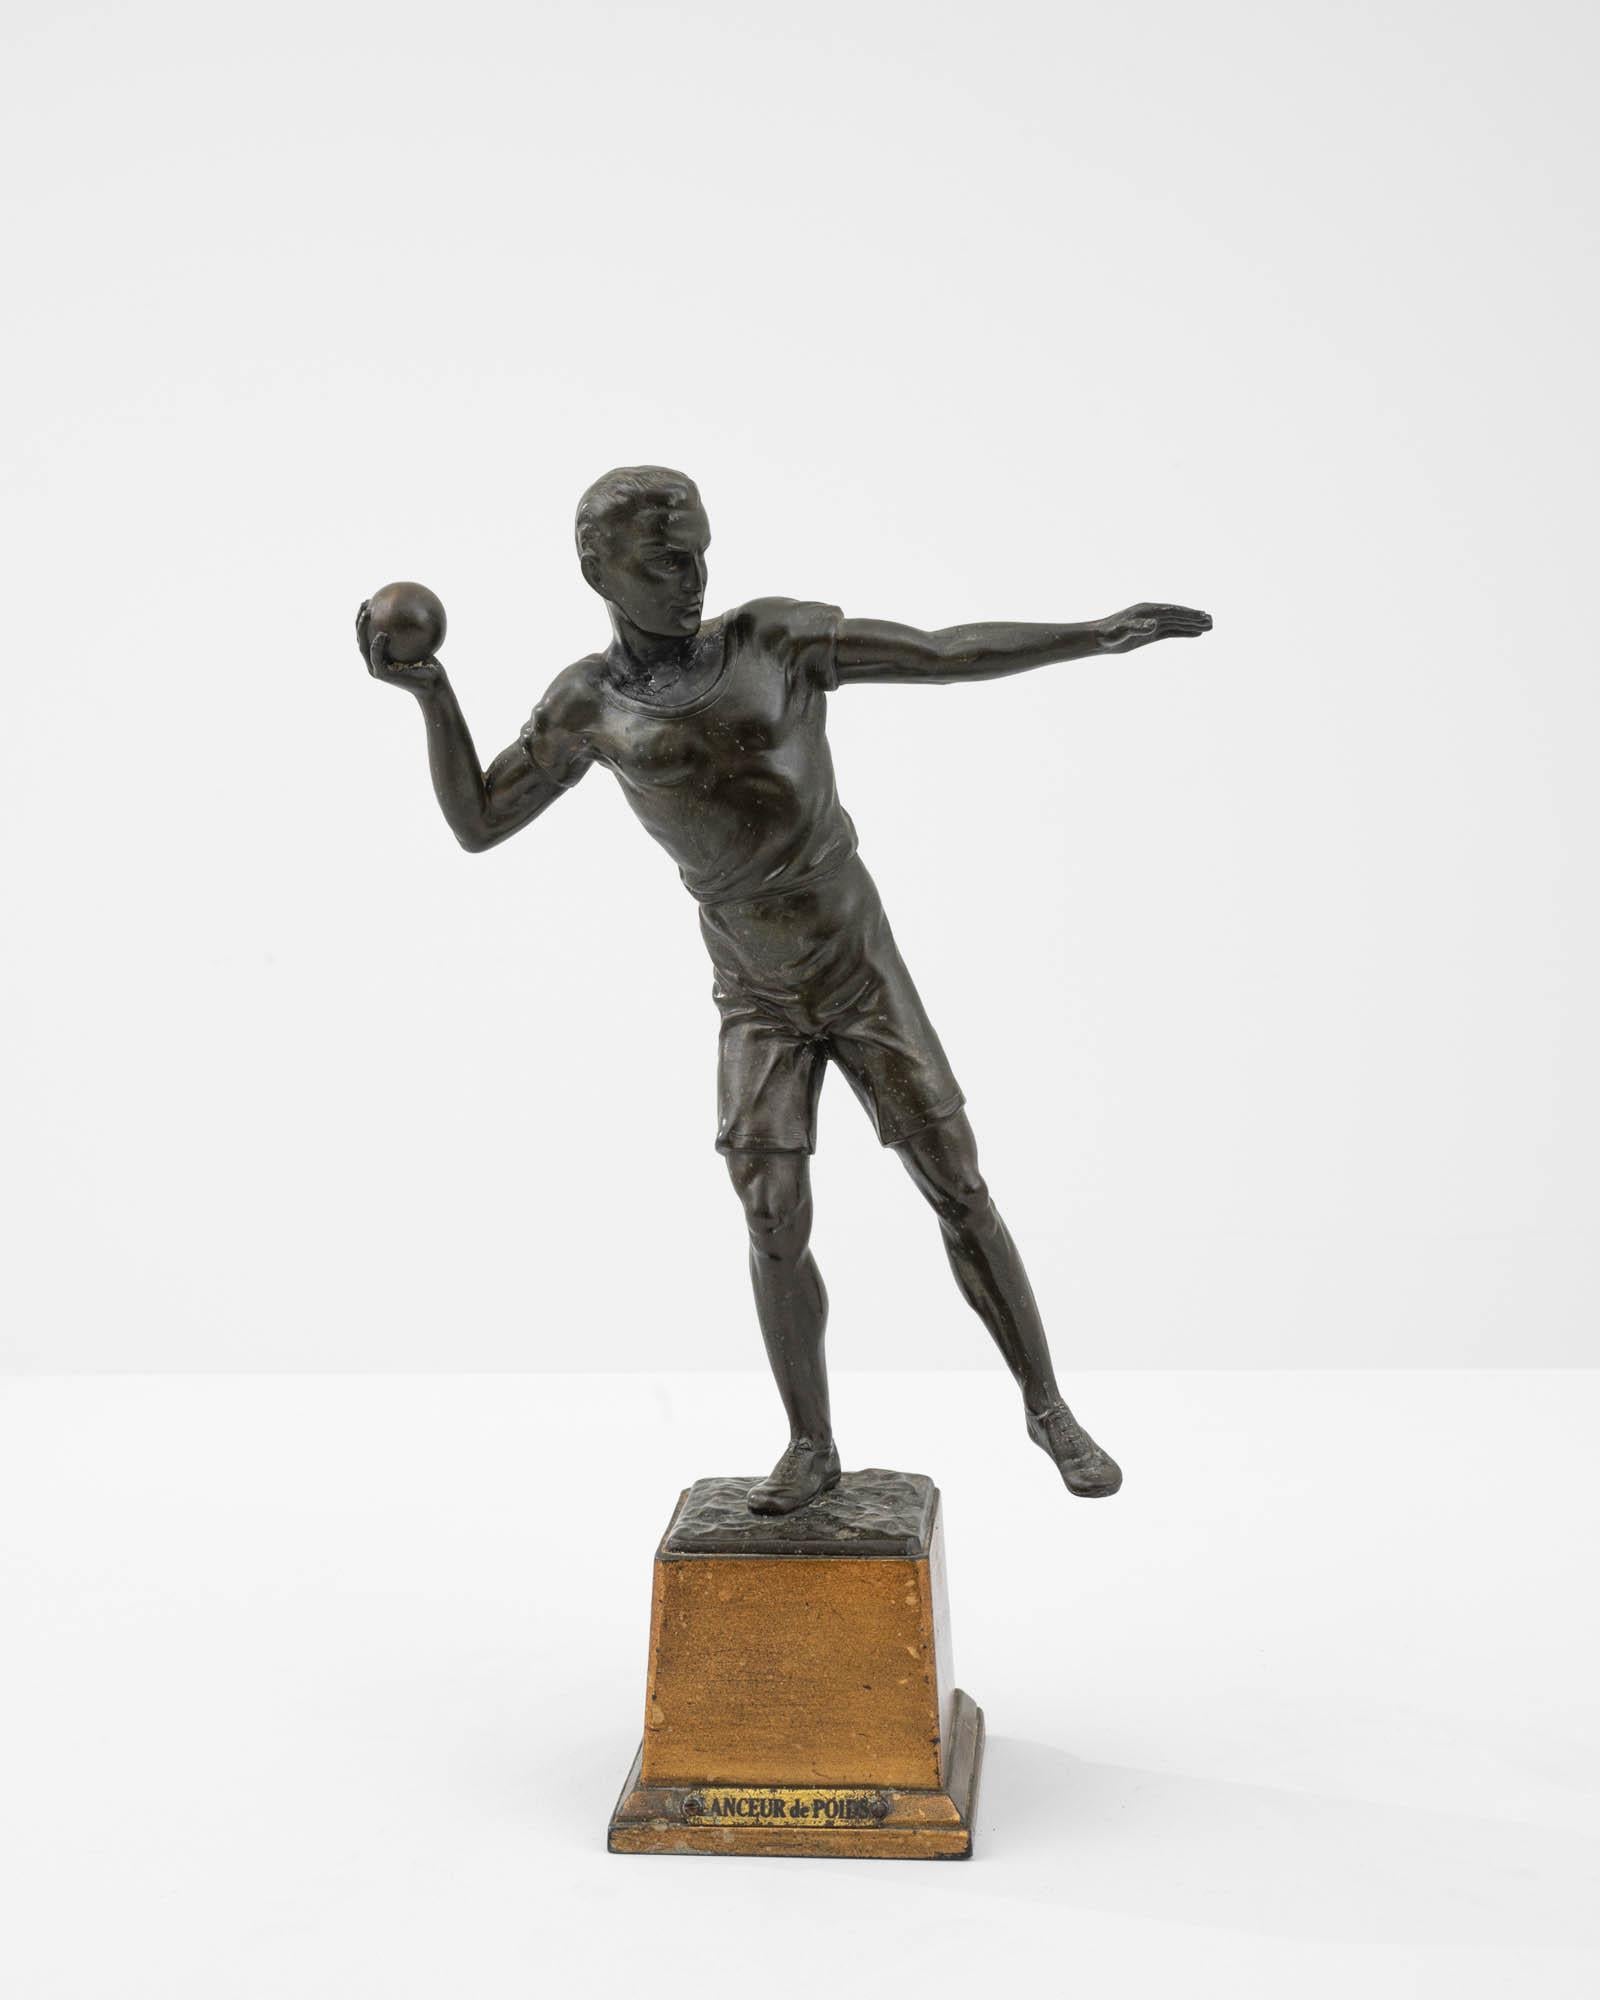 Le sport est un motif omniprésent dans l'art, et plus particulièrement dans la sculpture, depuis l'Antiquité. Cette reprise du motif classique donne une version française distincte du 20e siècle. Coulée dans le bronze, une figure olympienne